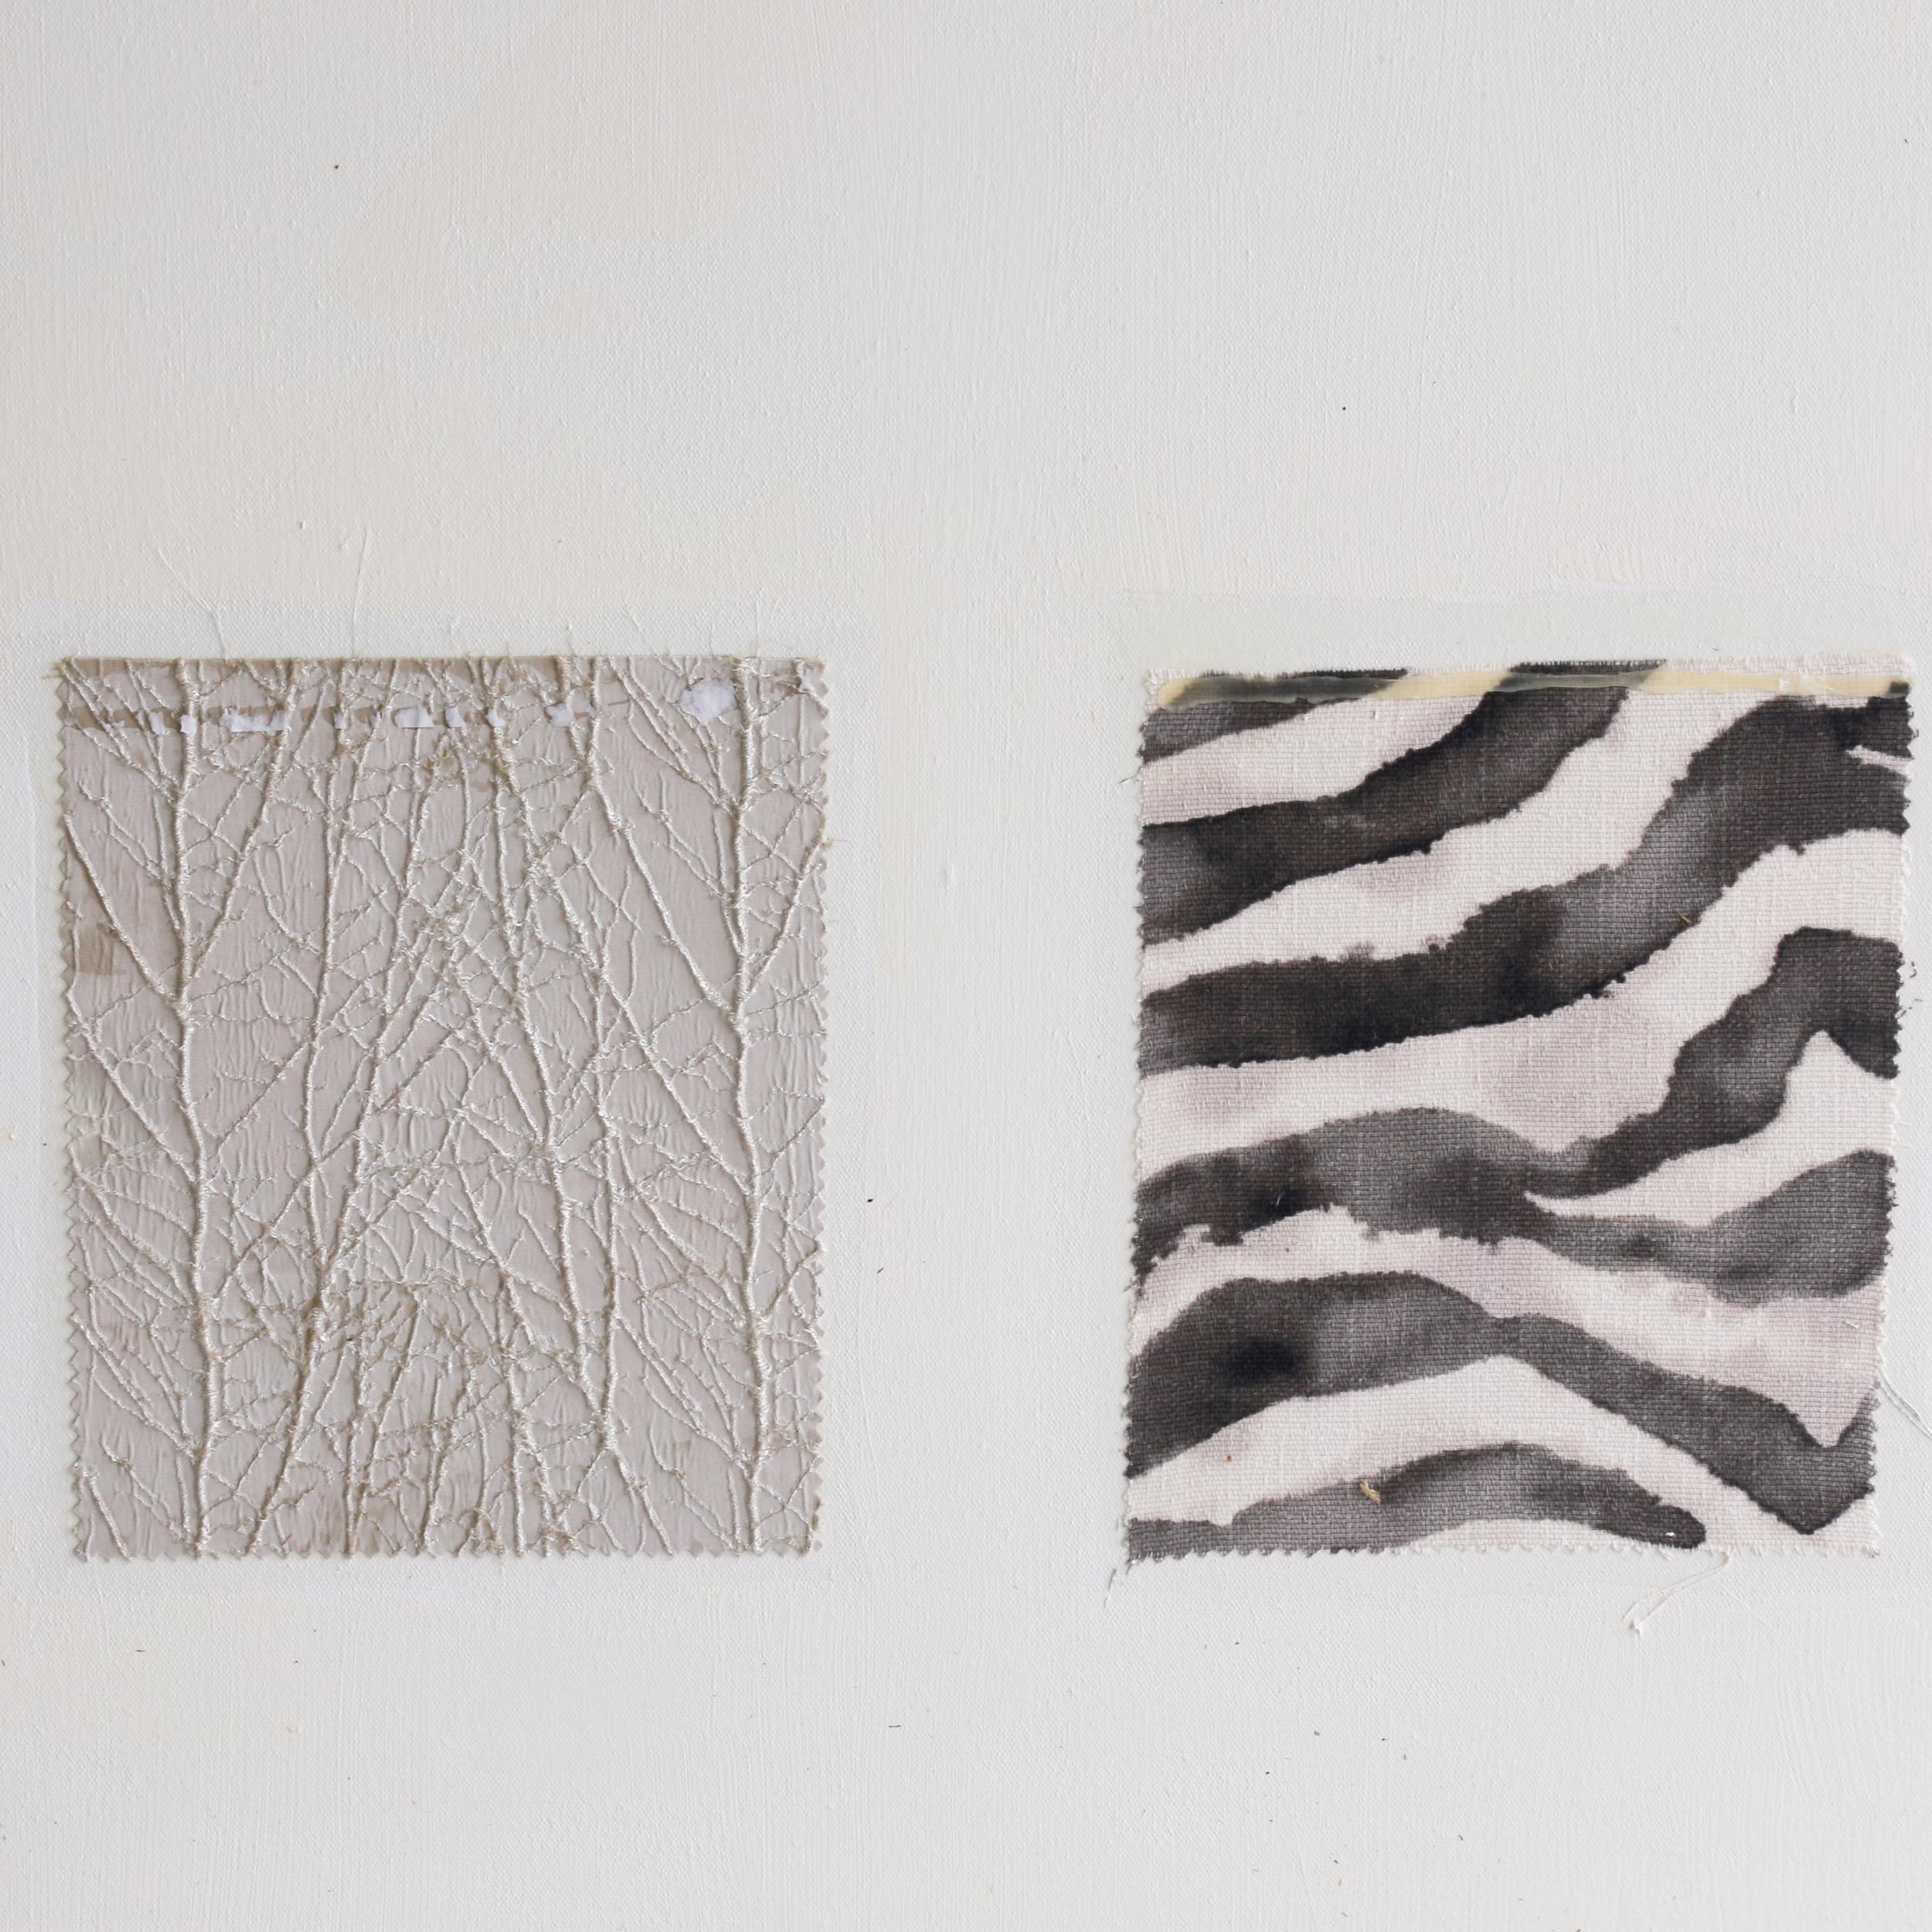 L'œuvre de Bernd Haussmann explore le geste, la couleur et la texture dans des peintures sur métal, acrylique, verre, bois, toile et papier, imitant les effets du temps, de la température et de l'environnement sur les surfaces. Né et éduqué en